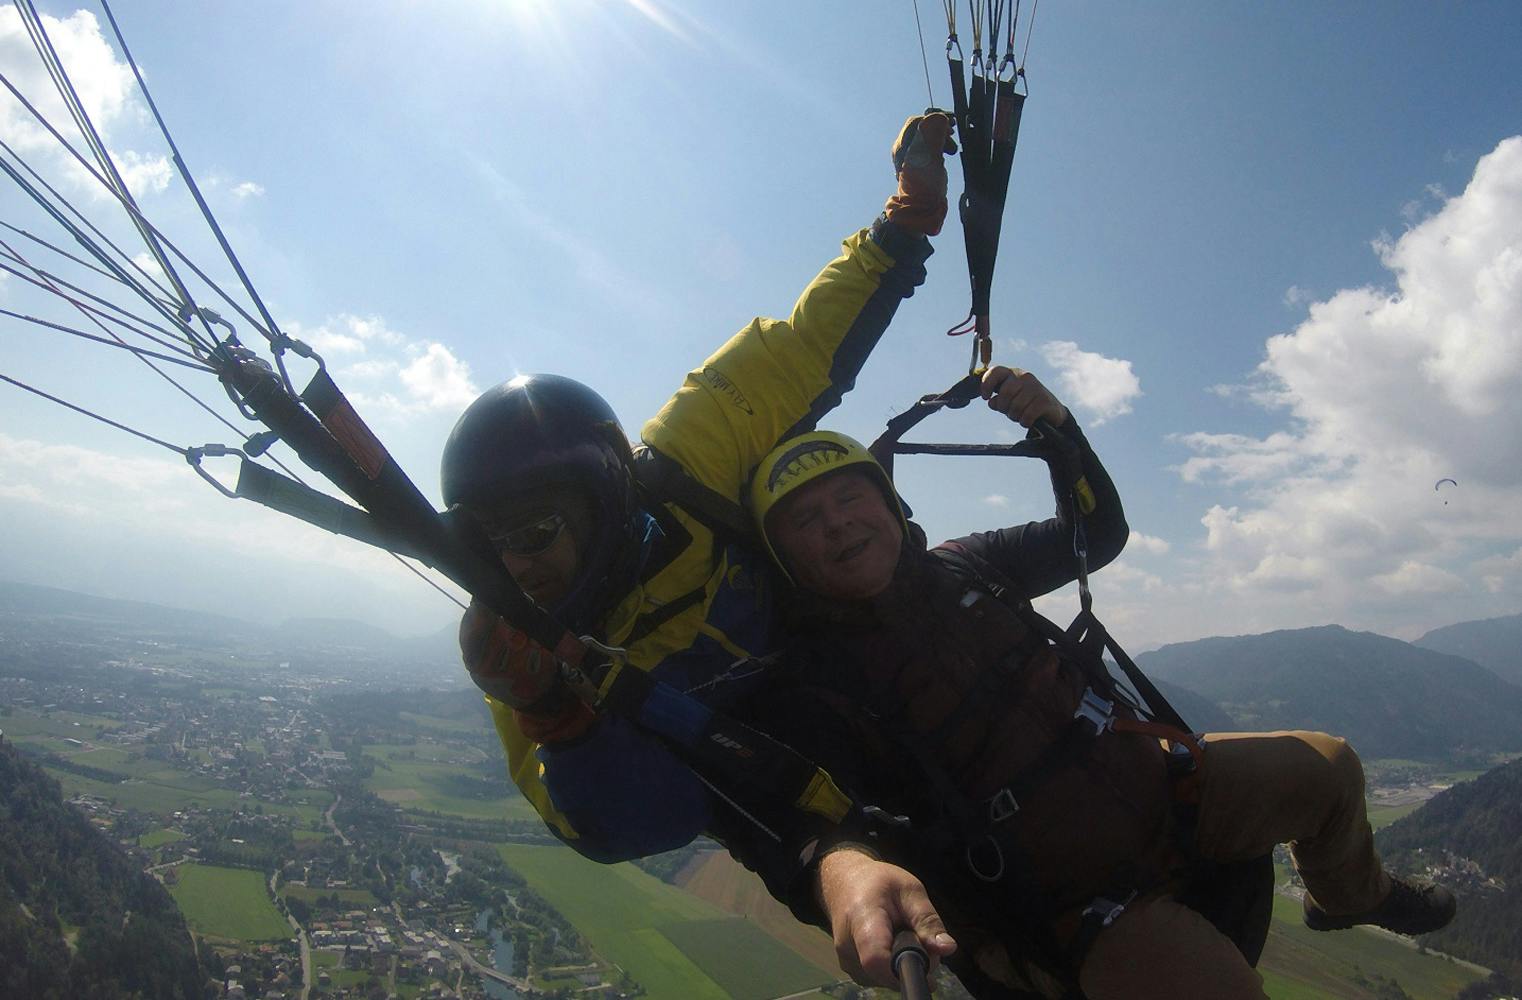 Gleitschirm Actionflug | der Adrenalinkick über Kärnten